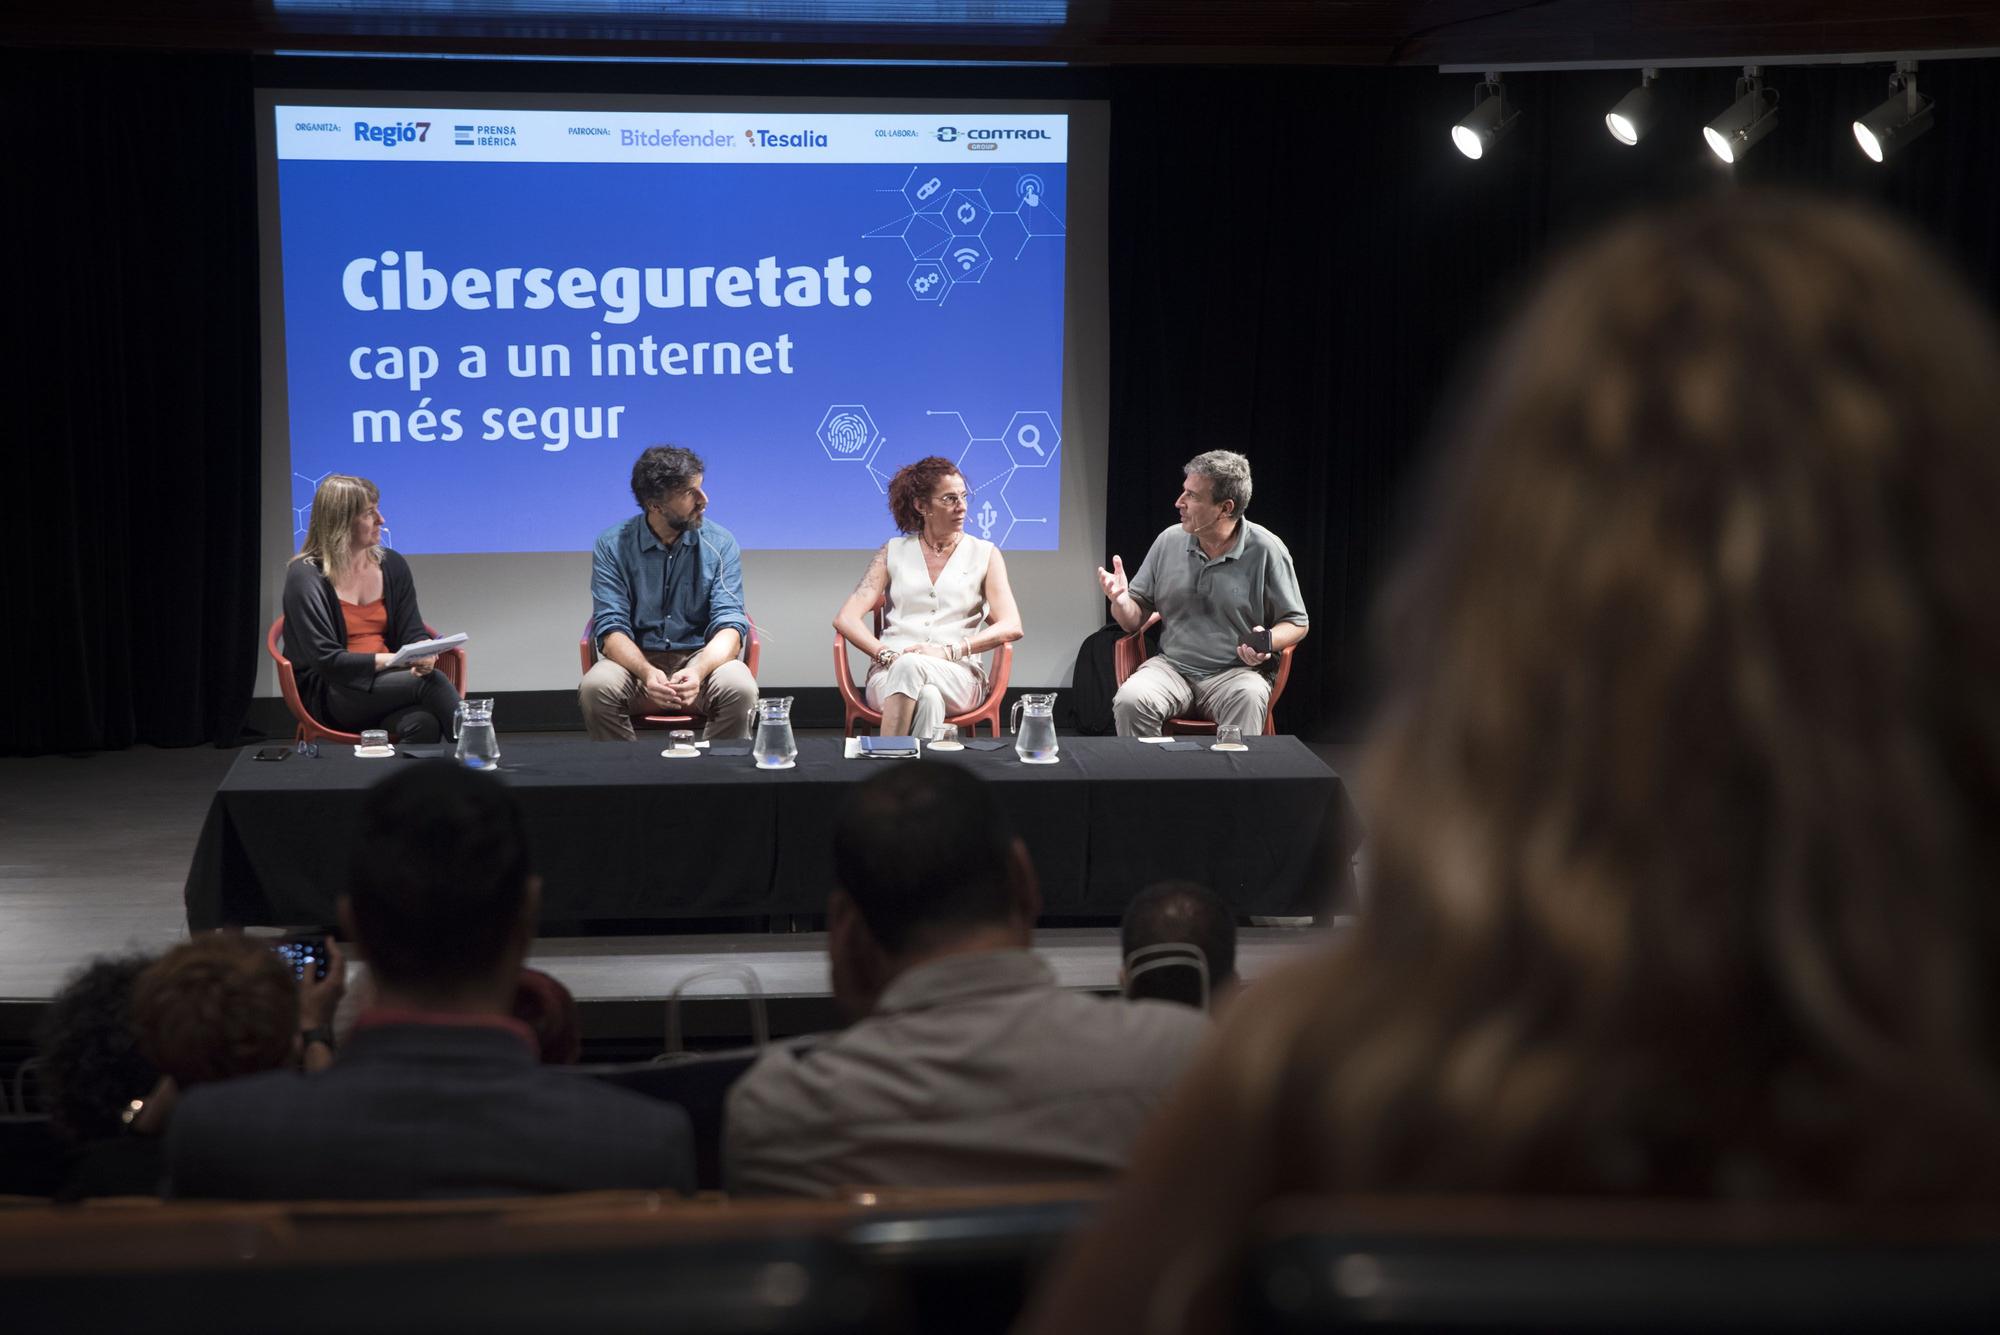 La jornada de debat sobre ciberseguretat de Regió7, en fotos